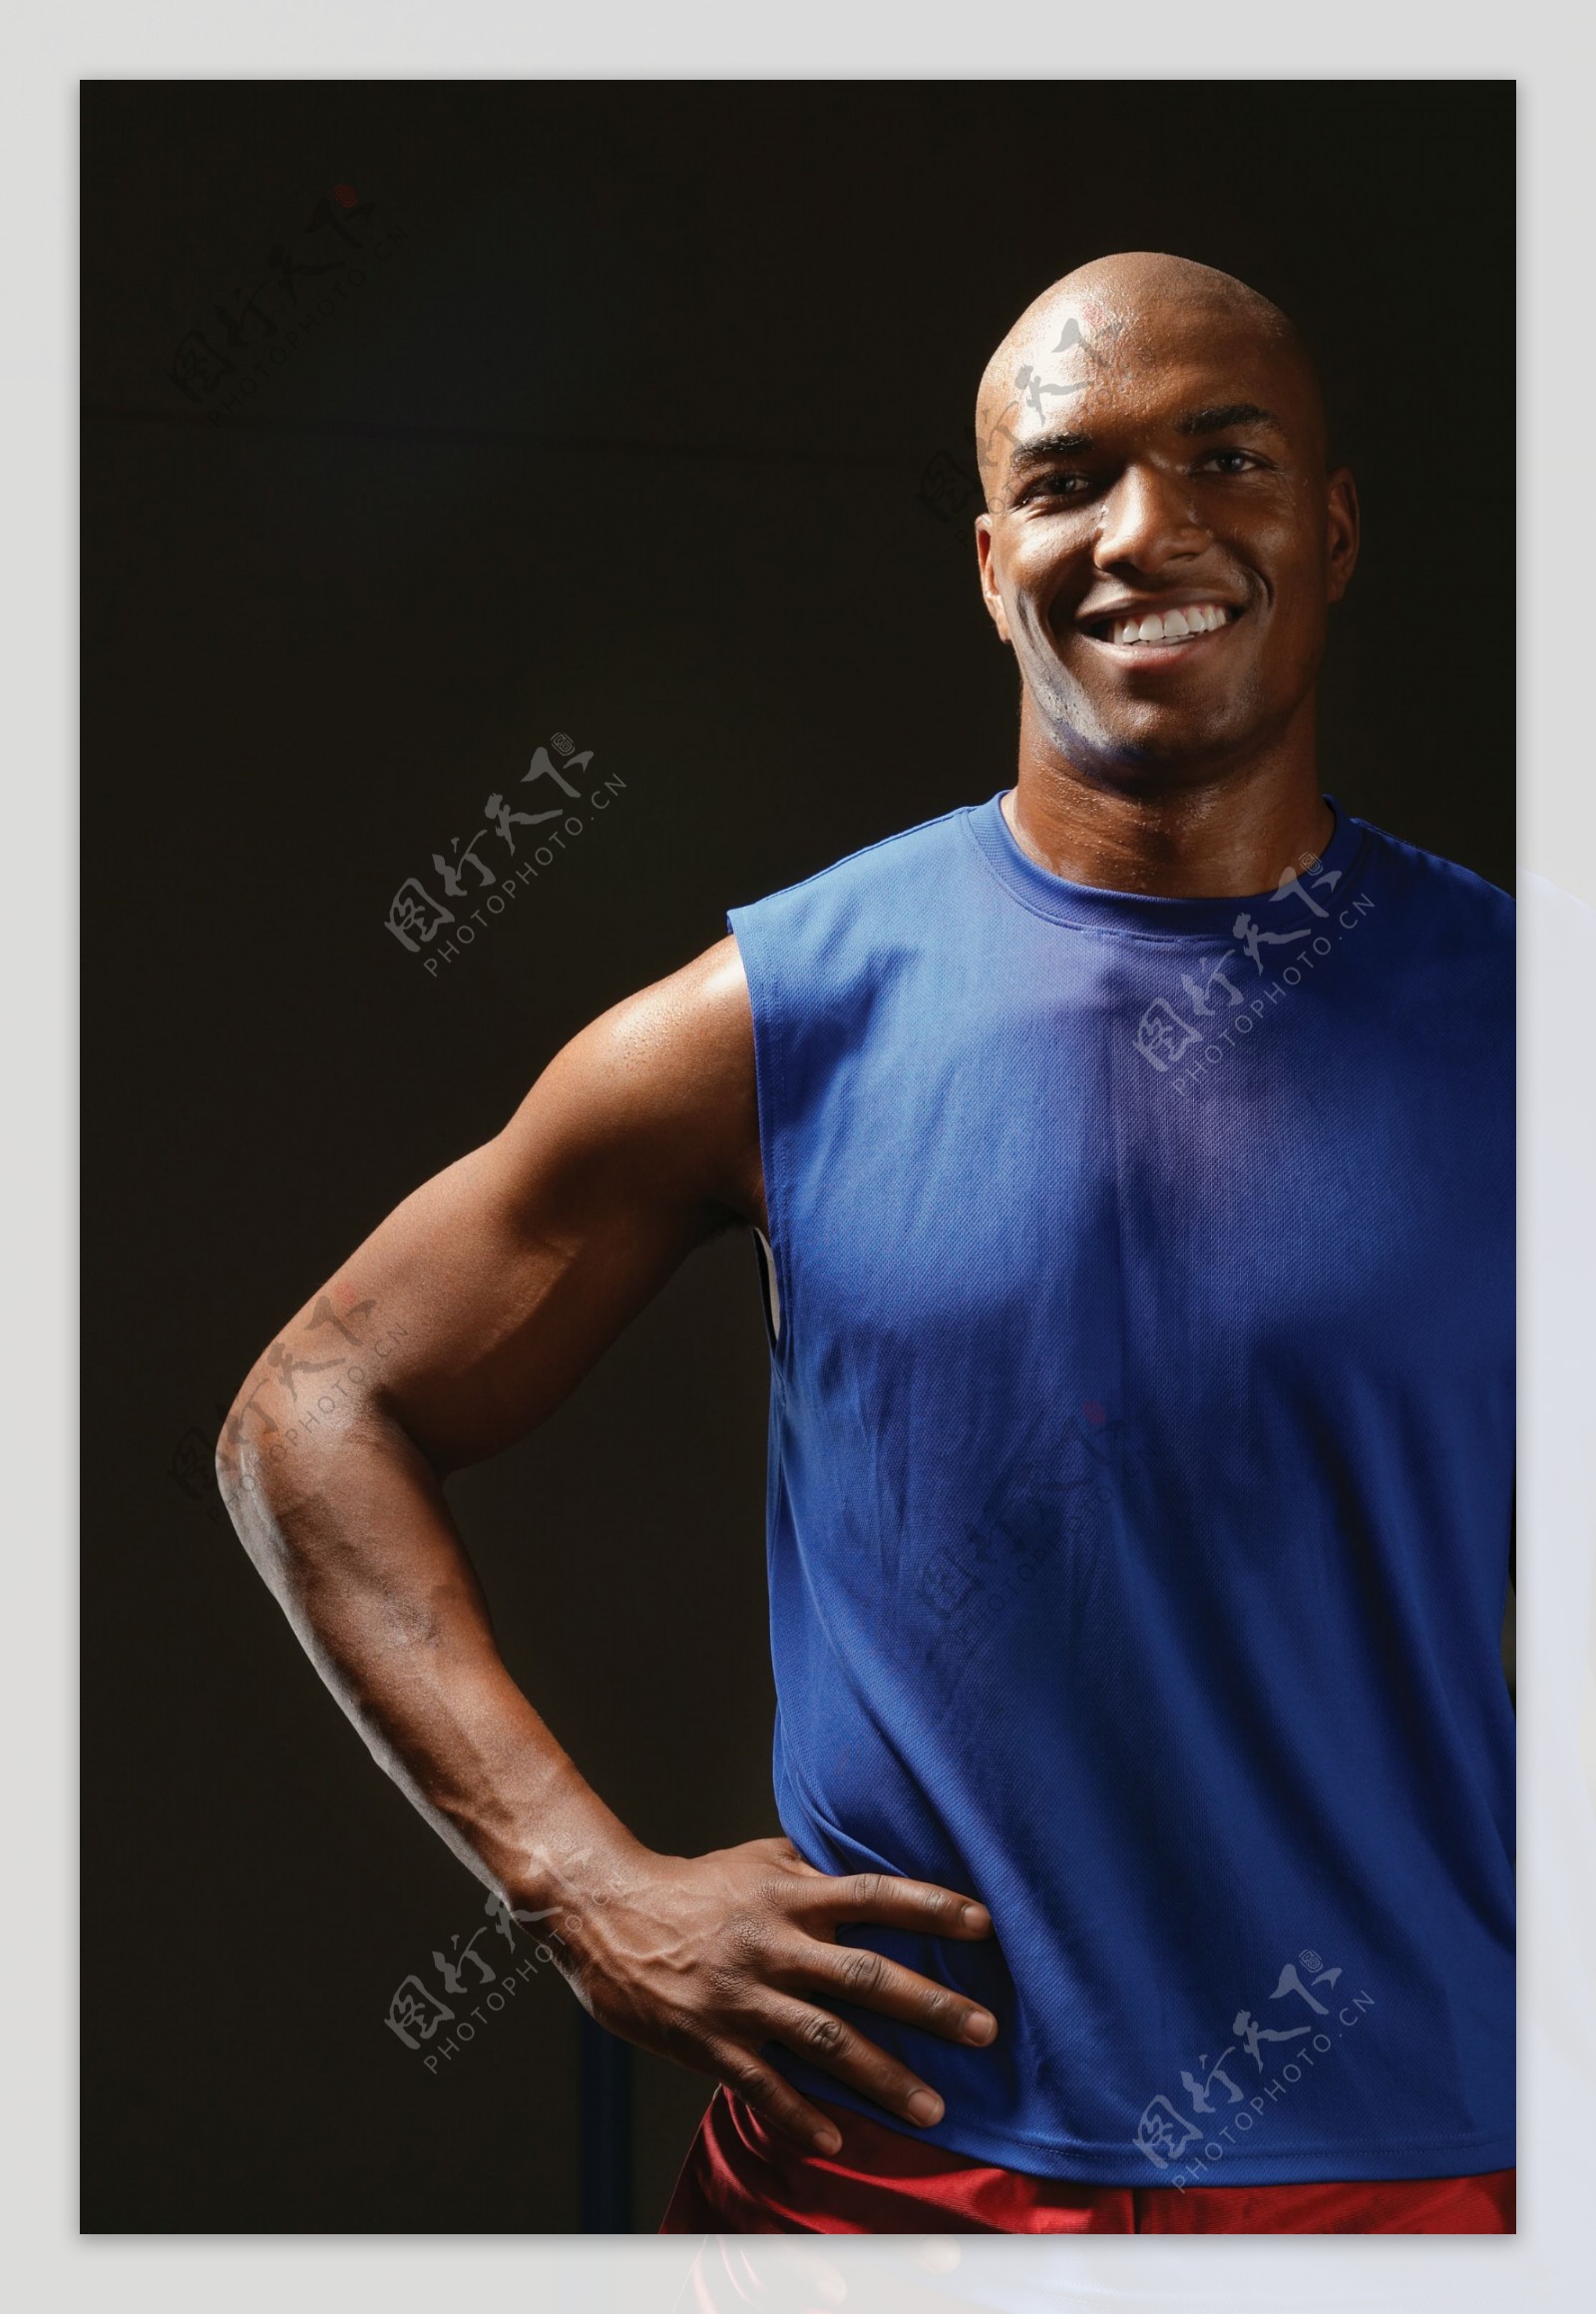 自信笑容的黑人运动员高清图片